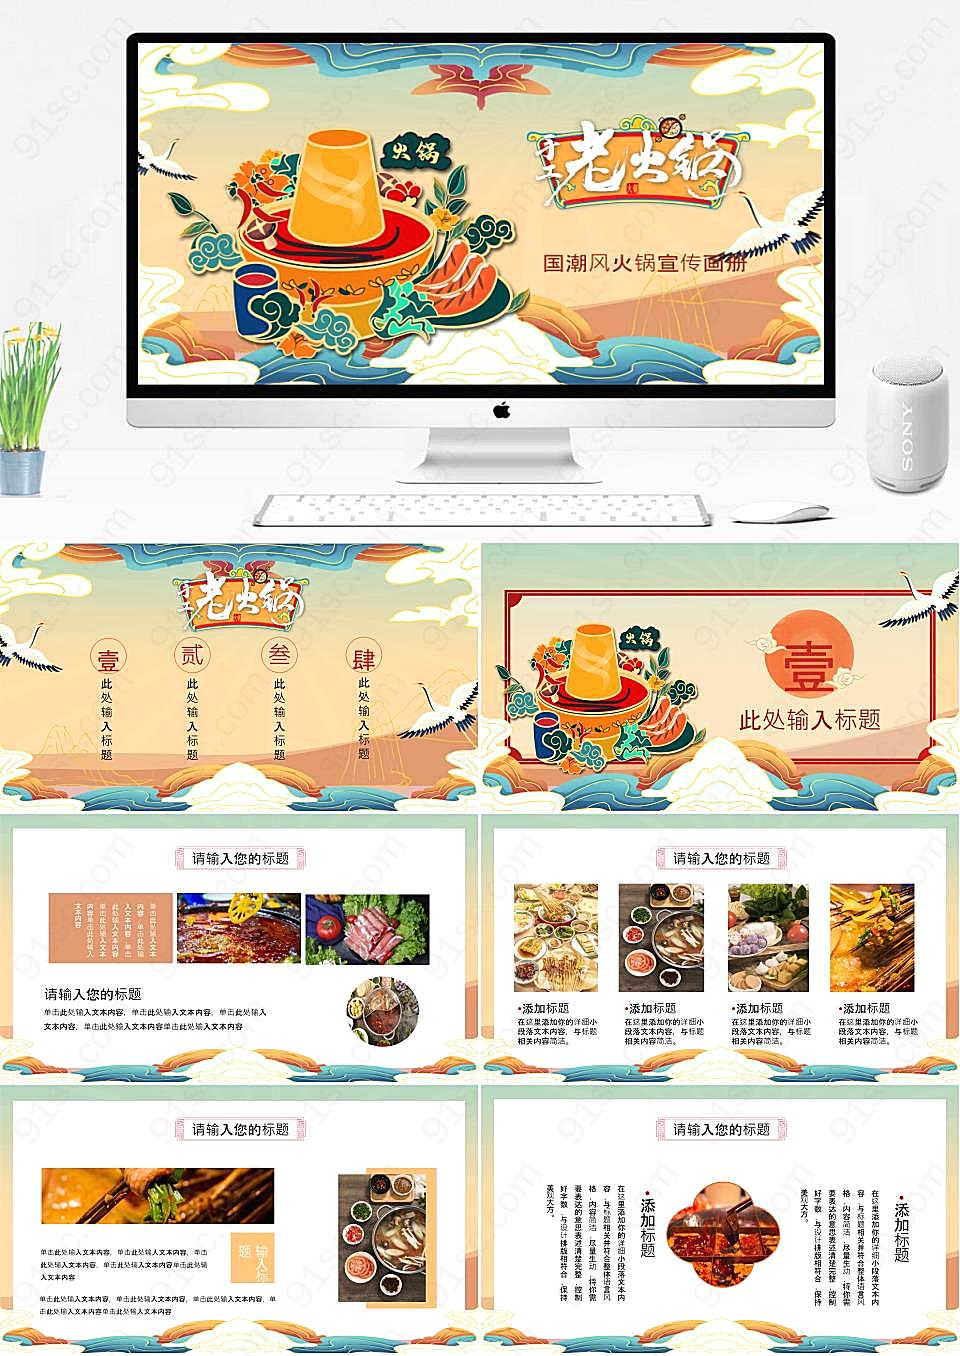 国潮卡通火锅PPT素材打造独具特色的美食品牌餐饮美食PPT模板下载